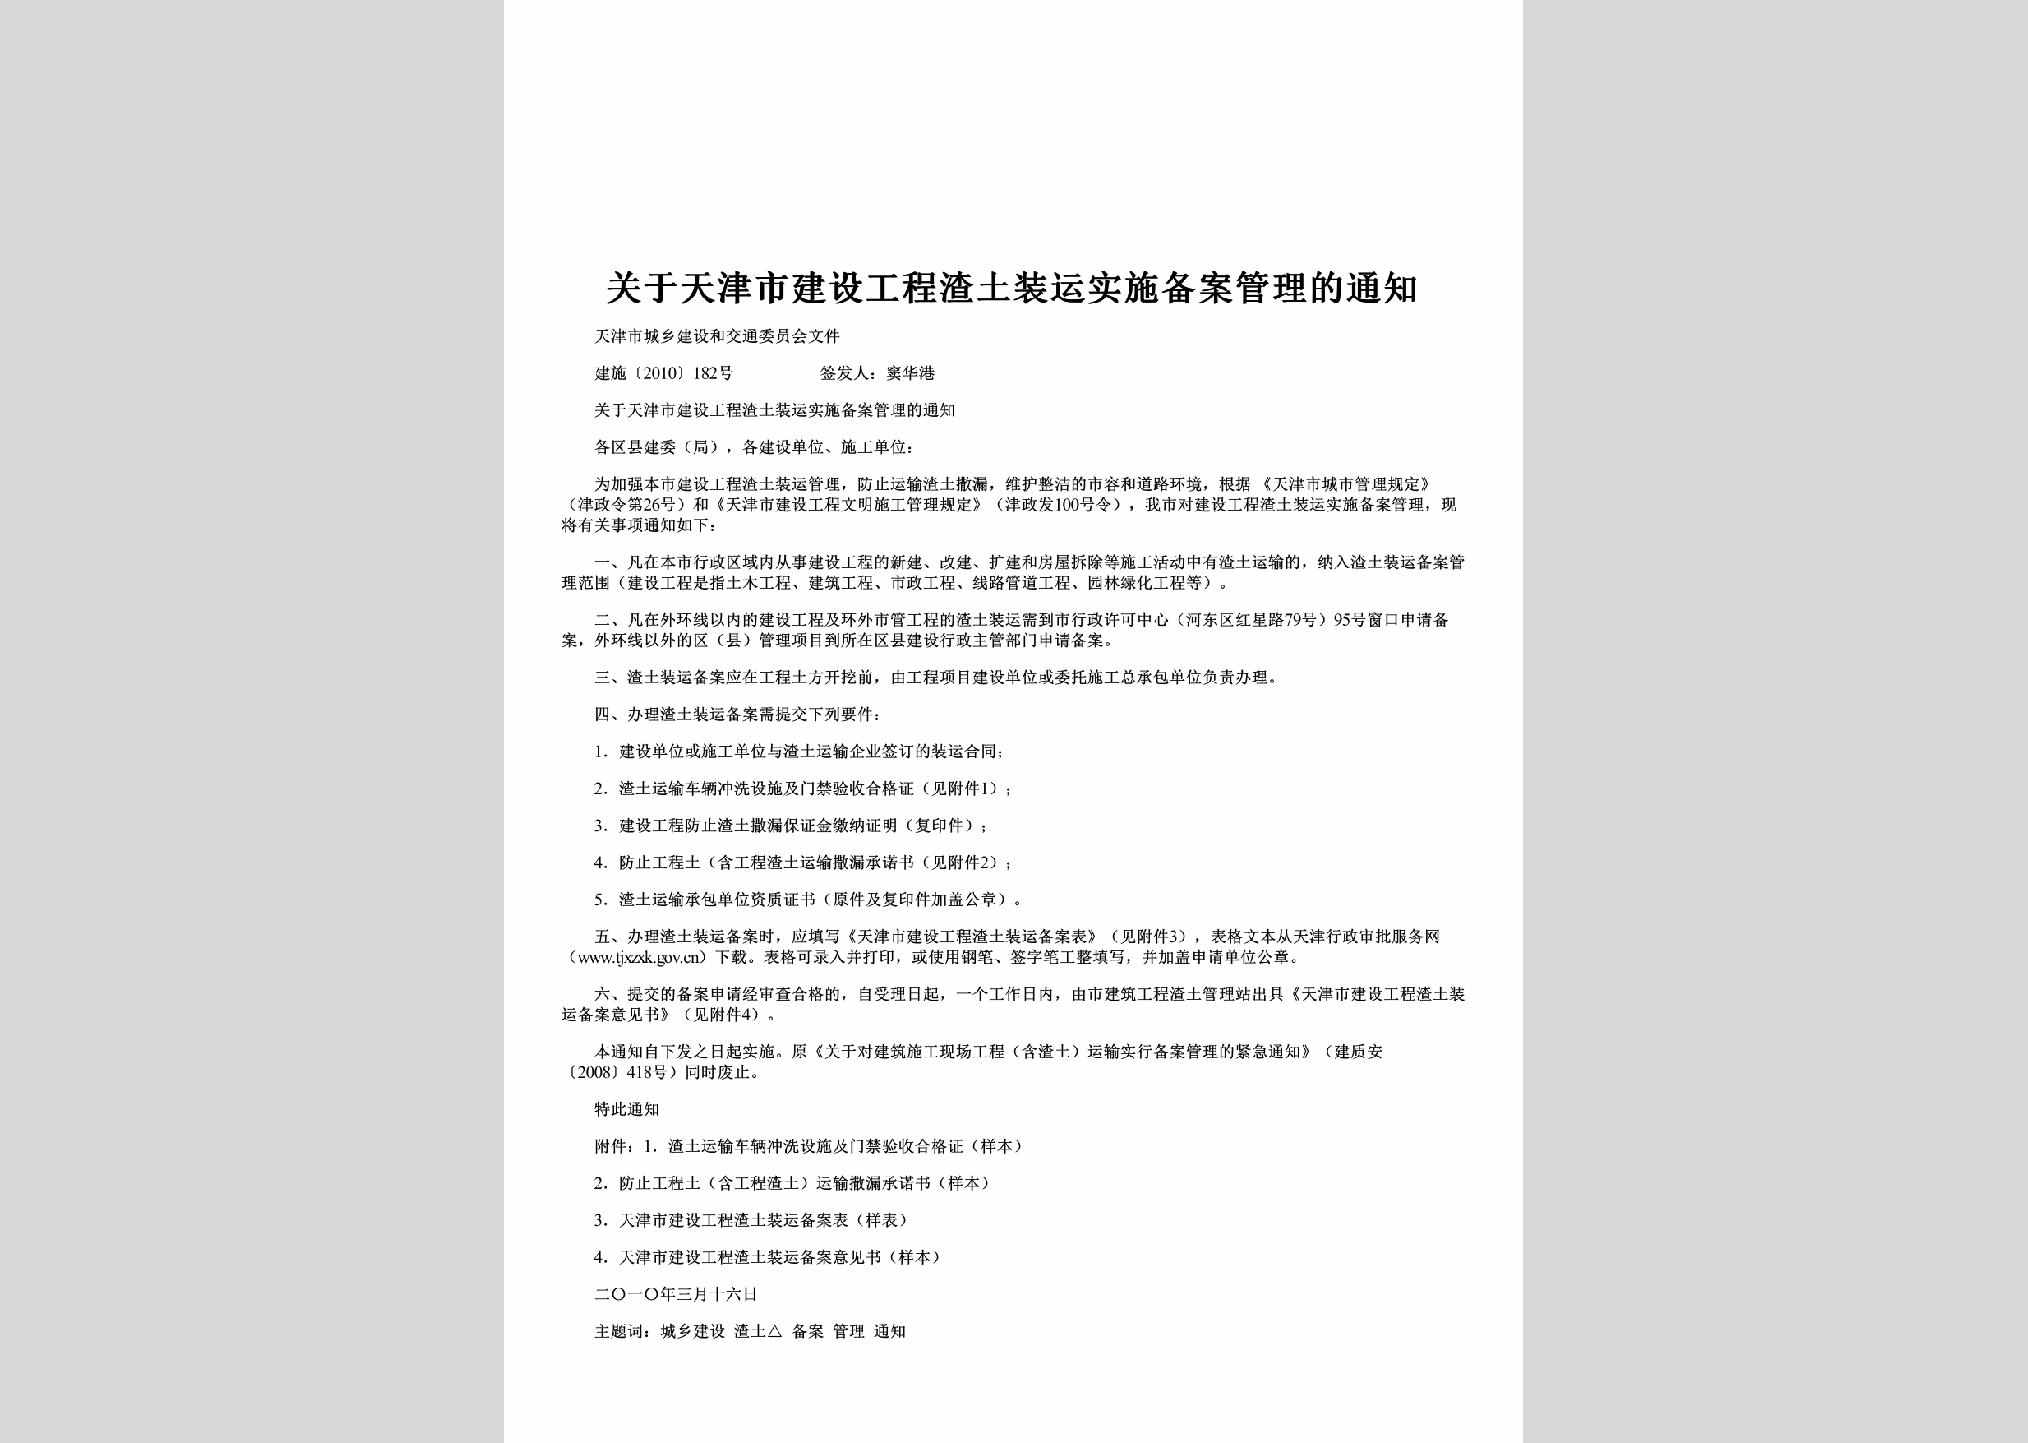 建施[2010]182号：关于天津市建设工程渣土装运实施备案管理的通知